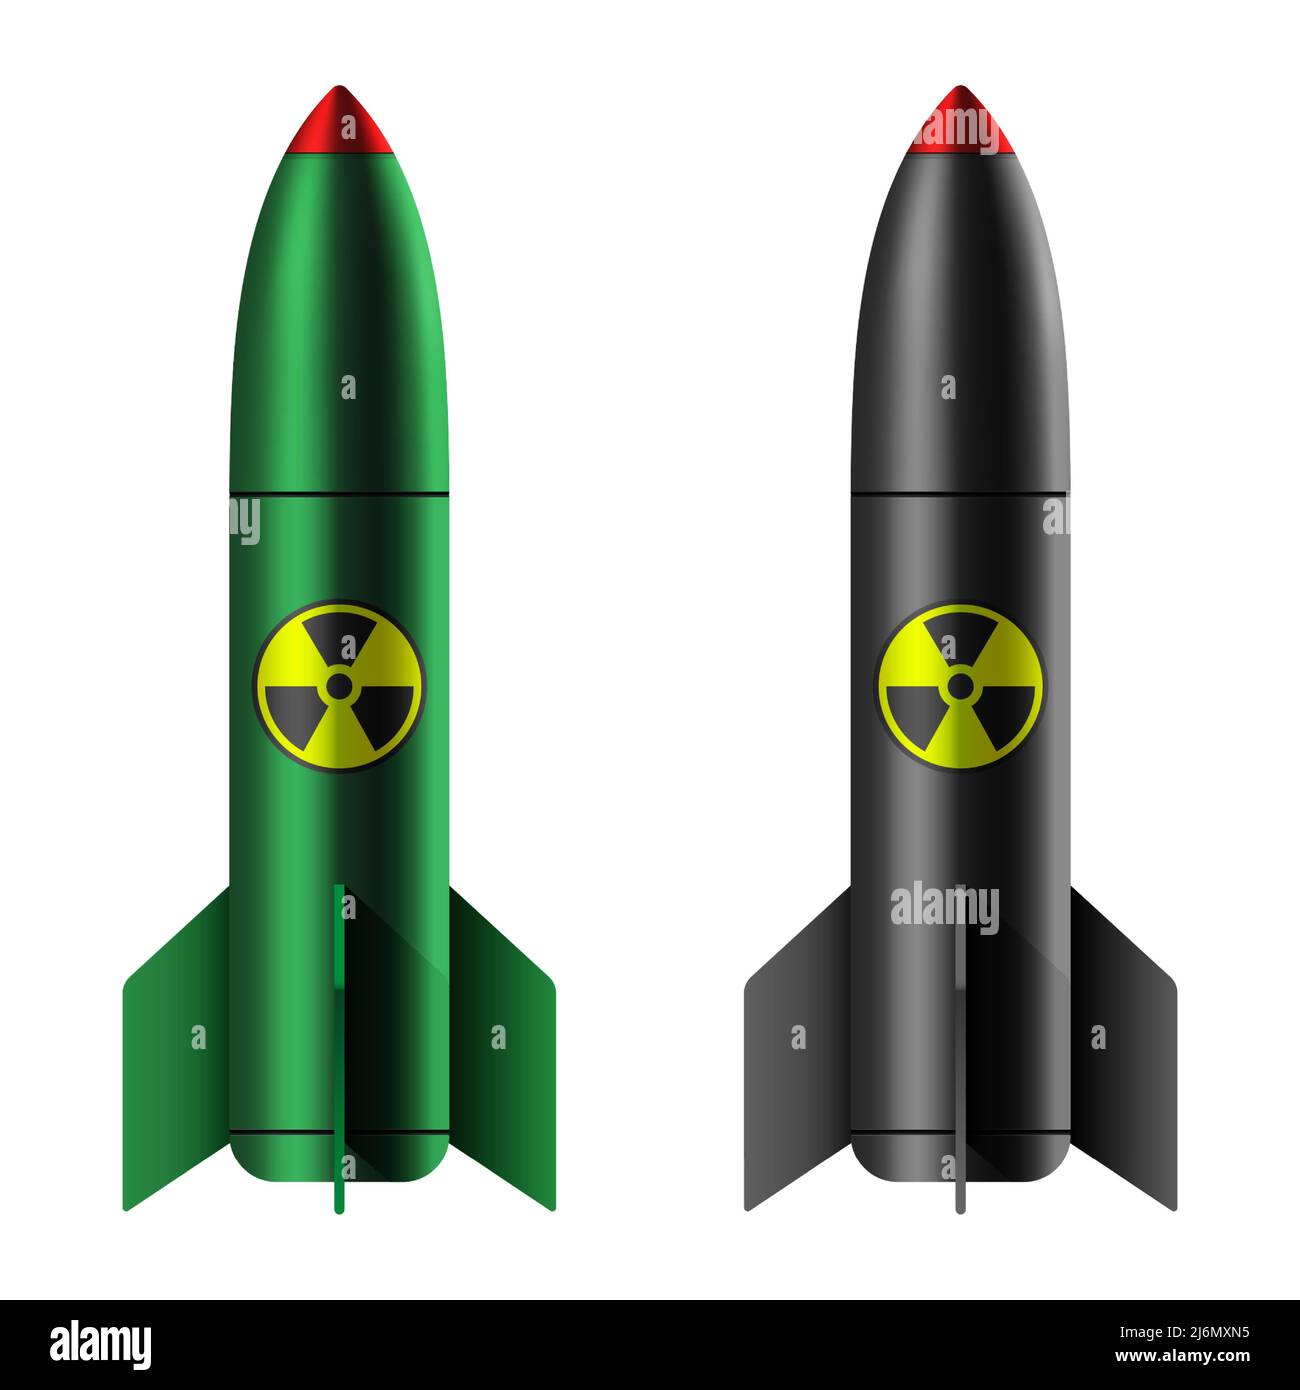 Una bomba atomica isolata su sfondo bianco. Arma nucleare verde e nera con icona di radiazione, illustrazione vettoriale. Illustrazione Vettoriale